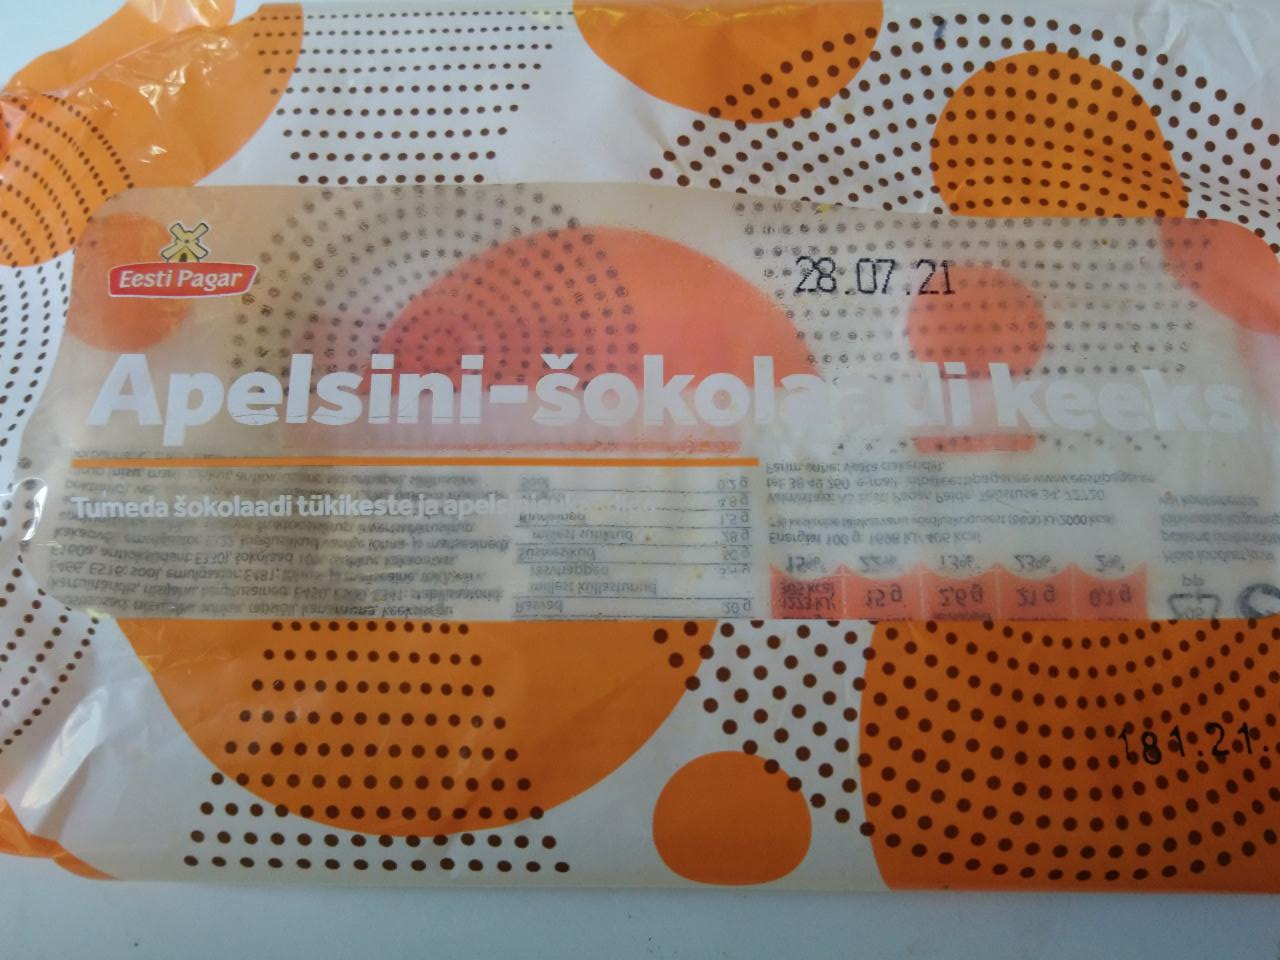 Фото - кекс апельсиново-шоколадный Eesti Pagar